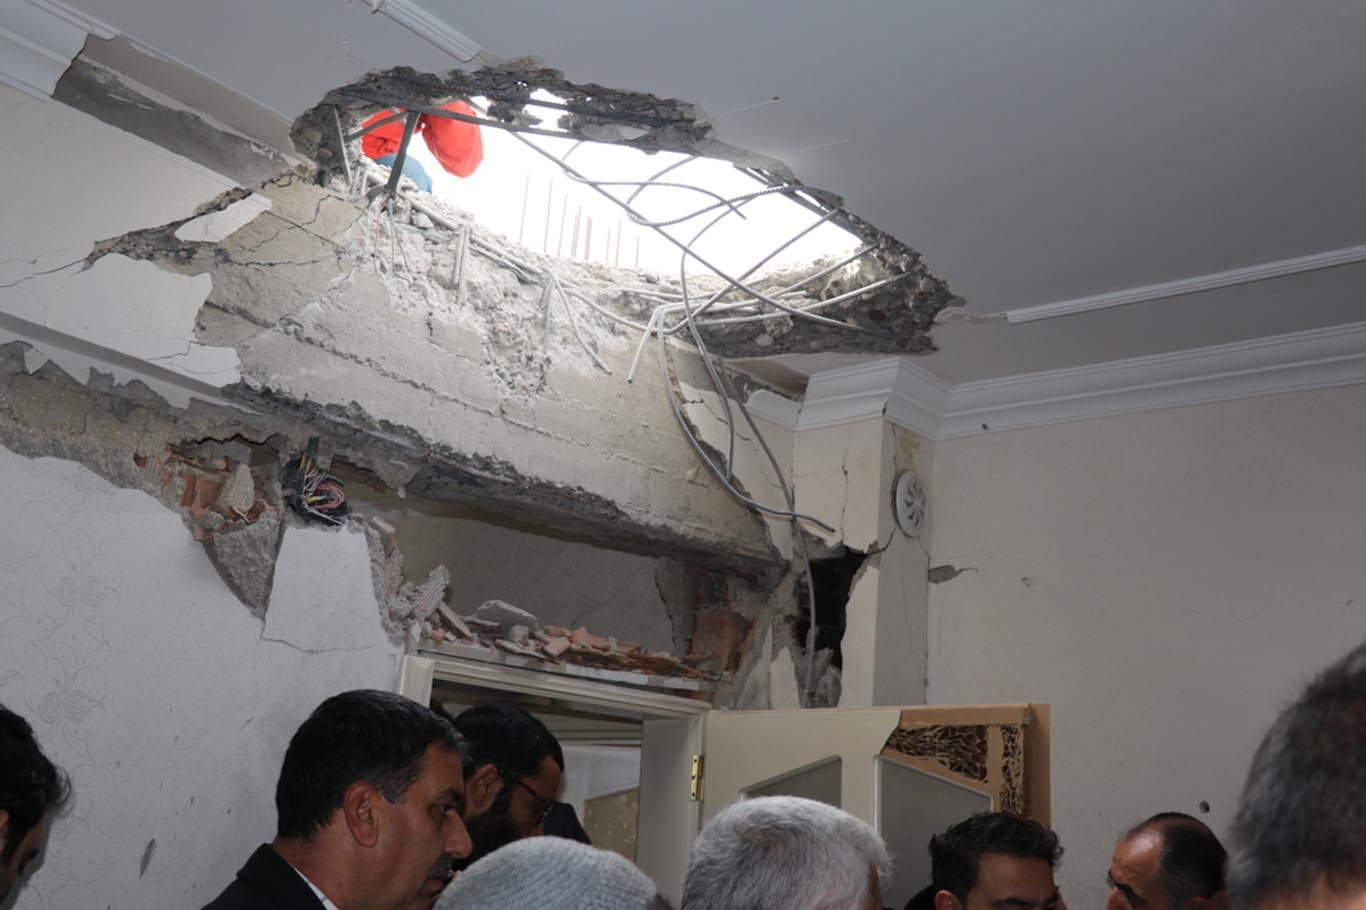 Başbakan Yardımcısı Akdağ roket düşen evlerde incelemede bulundu